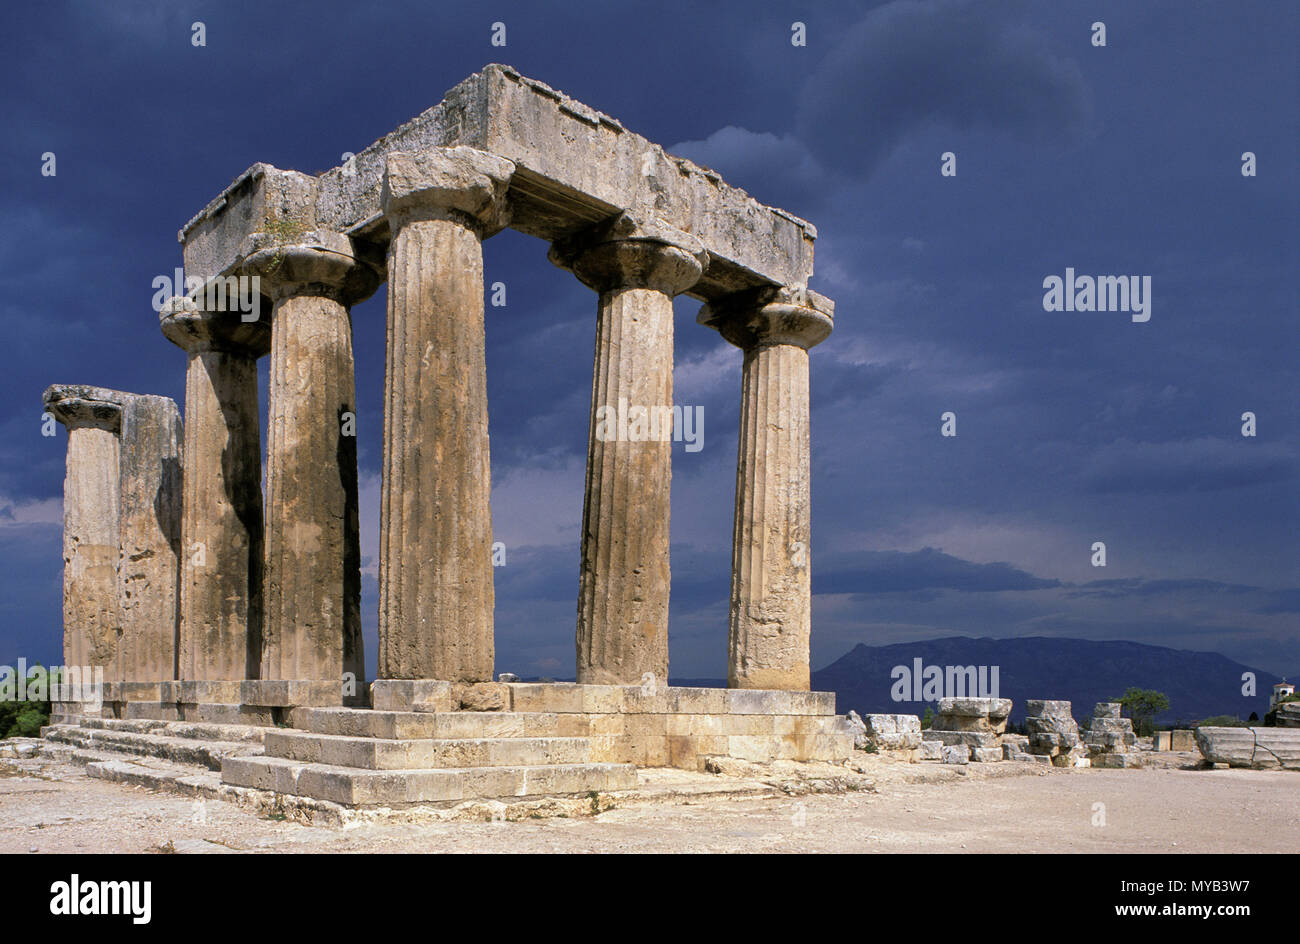 Site de la Grèce antique de Corinthe, Temple d'Apollon, représentant le reste des colonnes doriques, avec des nuages et la lumière (rendu en PS), Corinthe, Grèce Banque D'Images